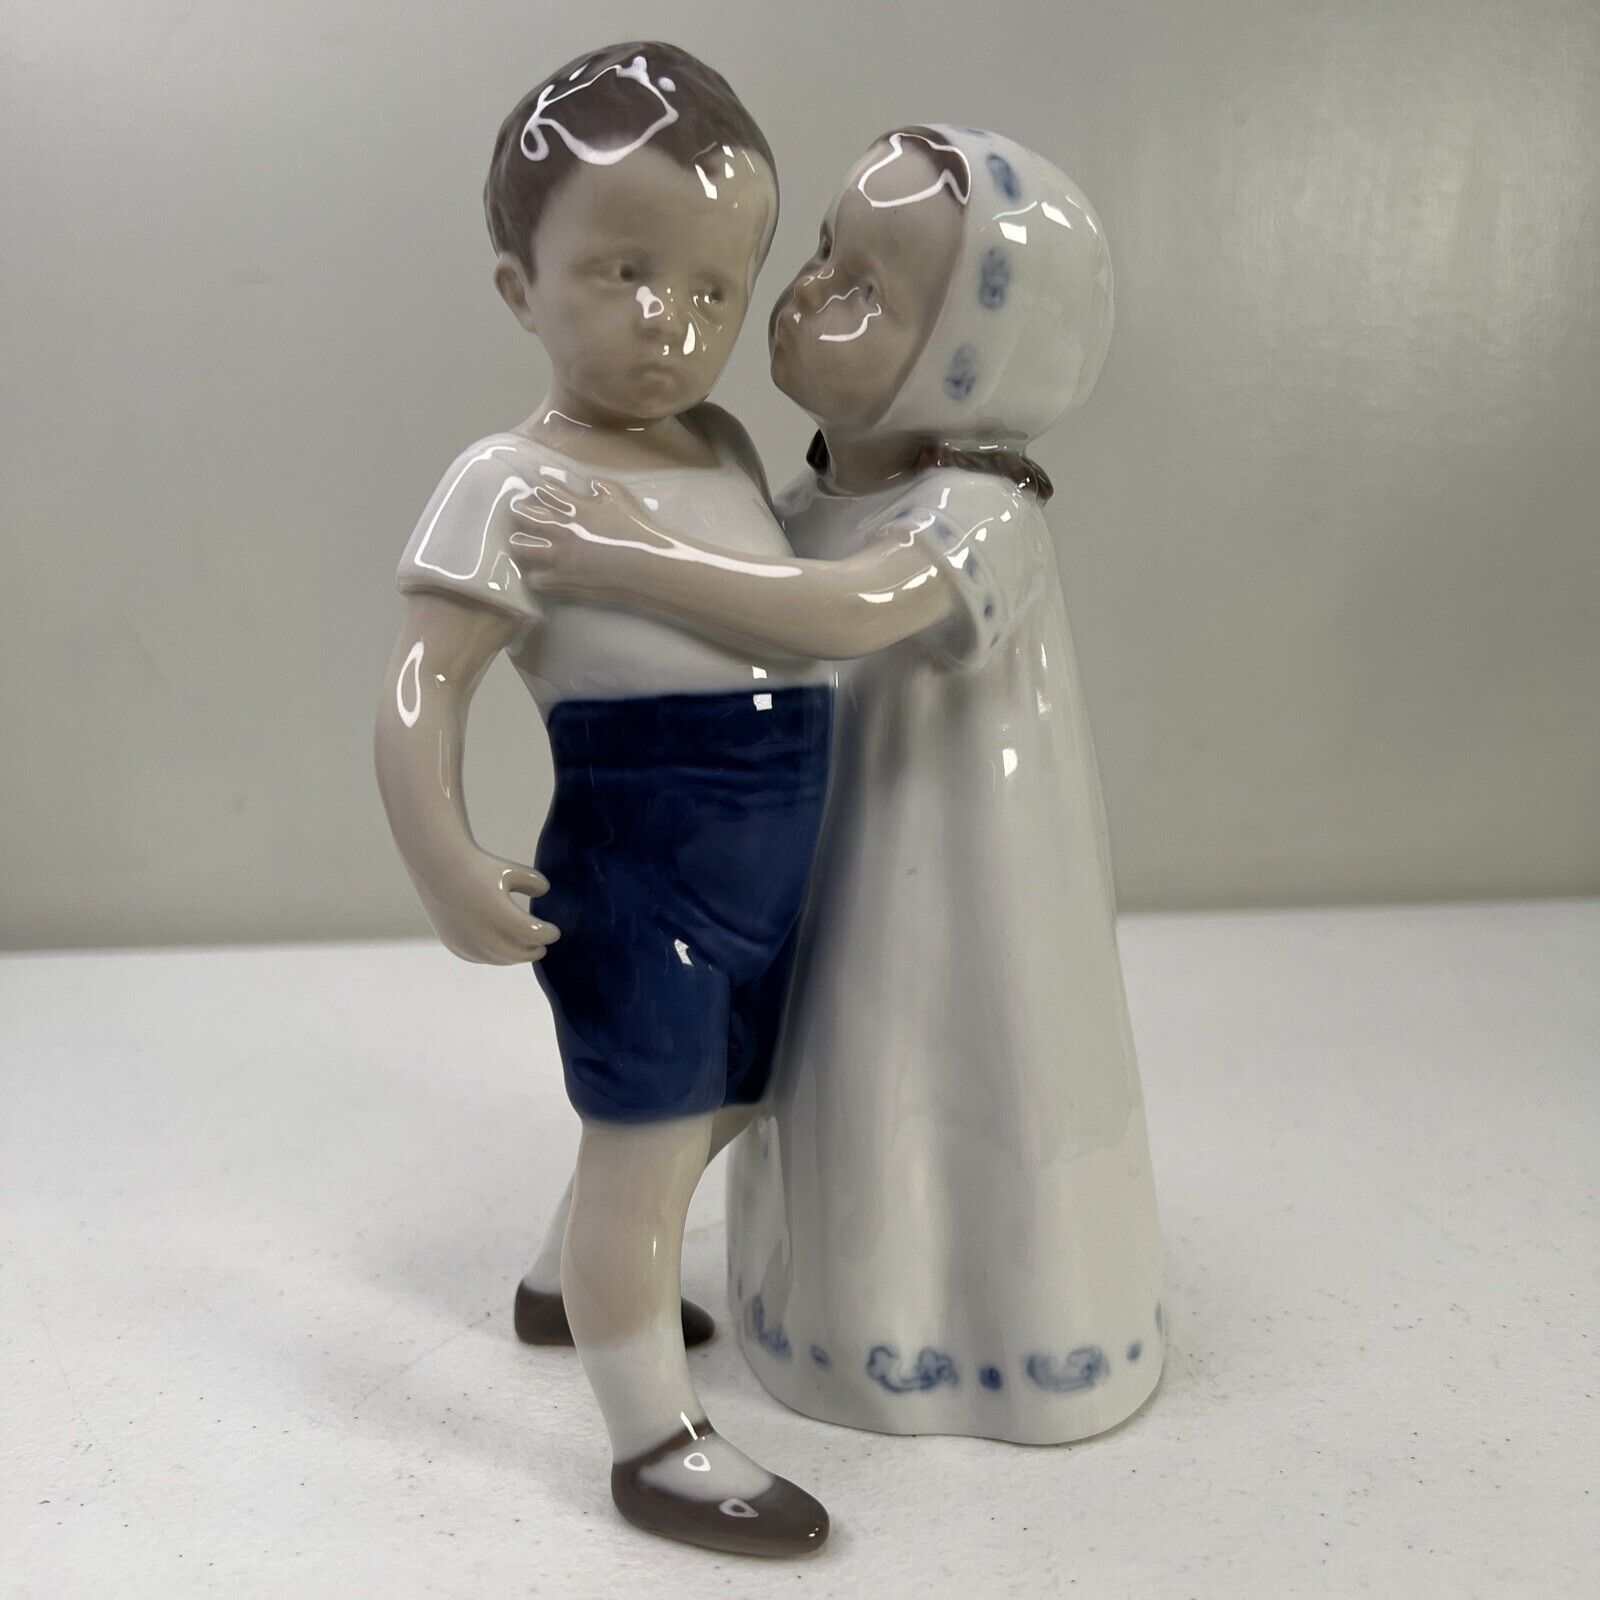 B&G Bing and Grondahl Copenhagen Figurine 1614 LOVE REFUSED GIRL KISSING BOY